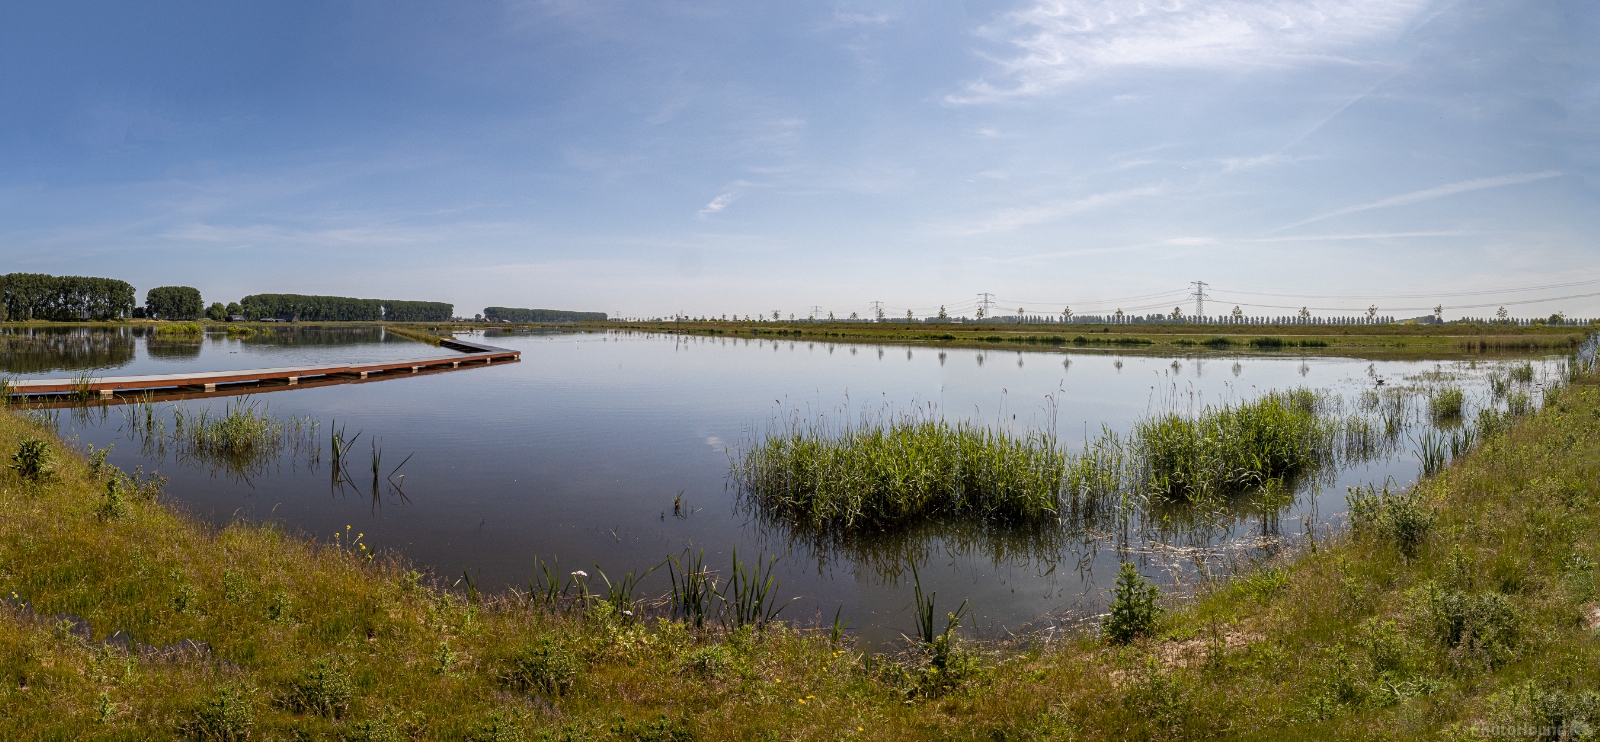 Image of Isle of Dordrecht (National Park Biesbosch) by Ruud Bijvank